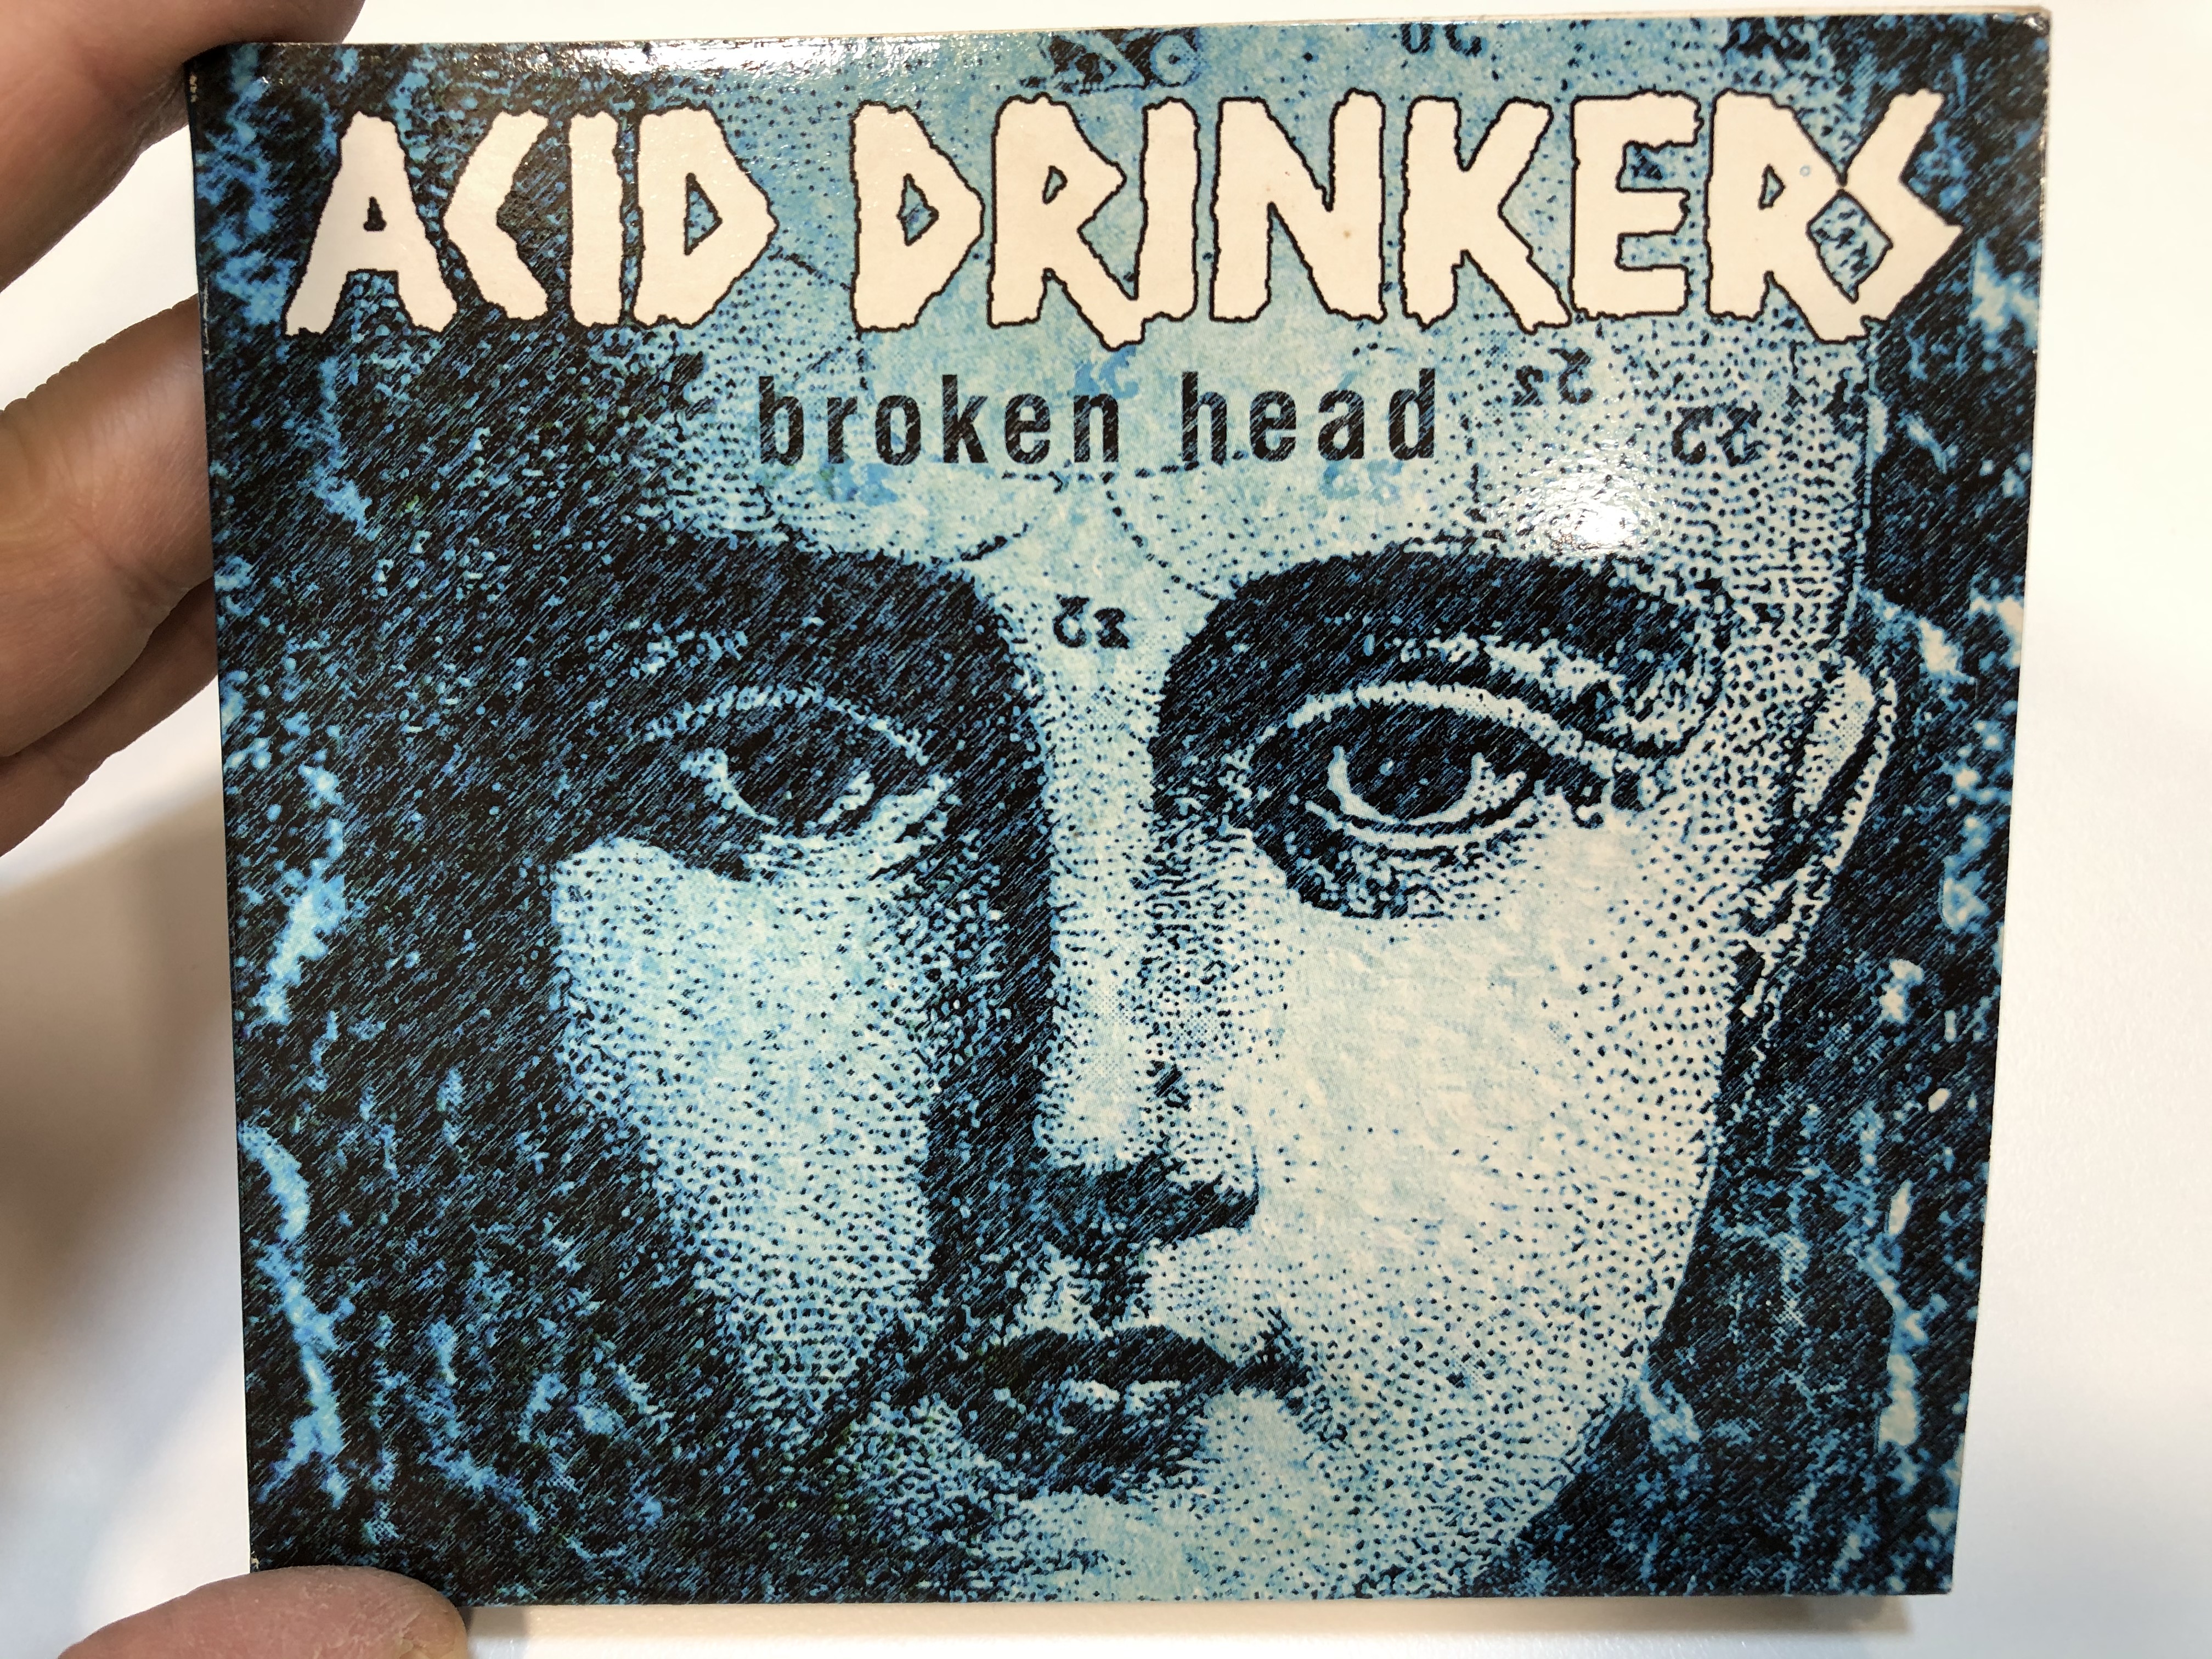 acid-drinkers-broken-head-metal-mind-productions-audio-cd-2000-mmp-cd-0113-dg-1-.jpg